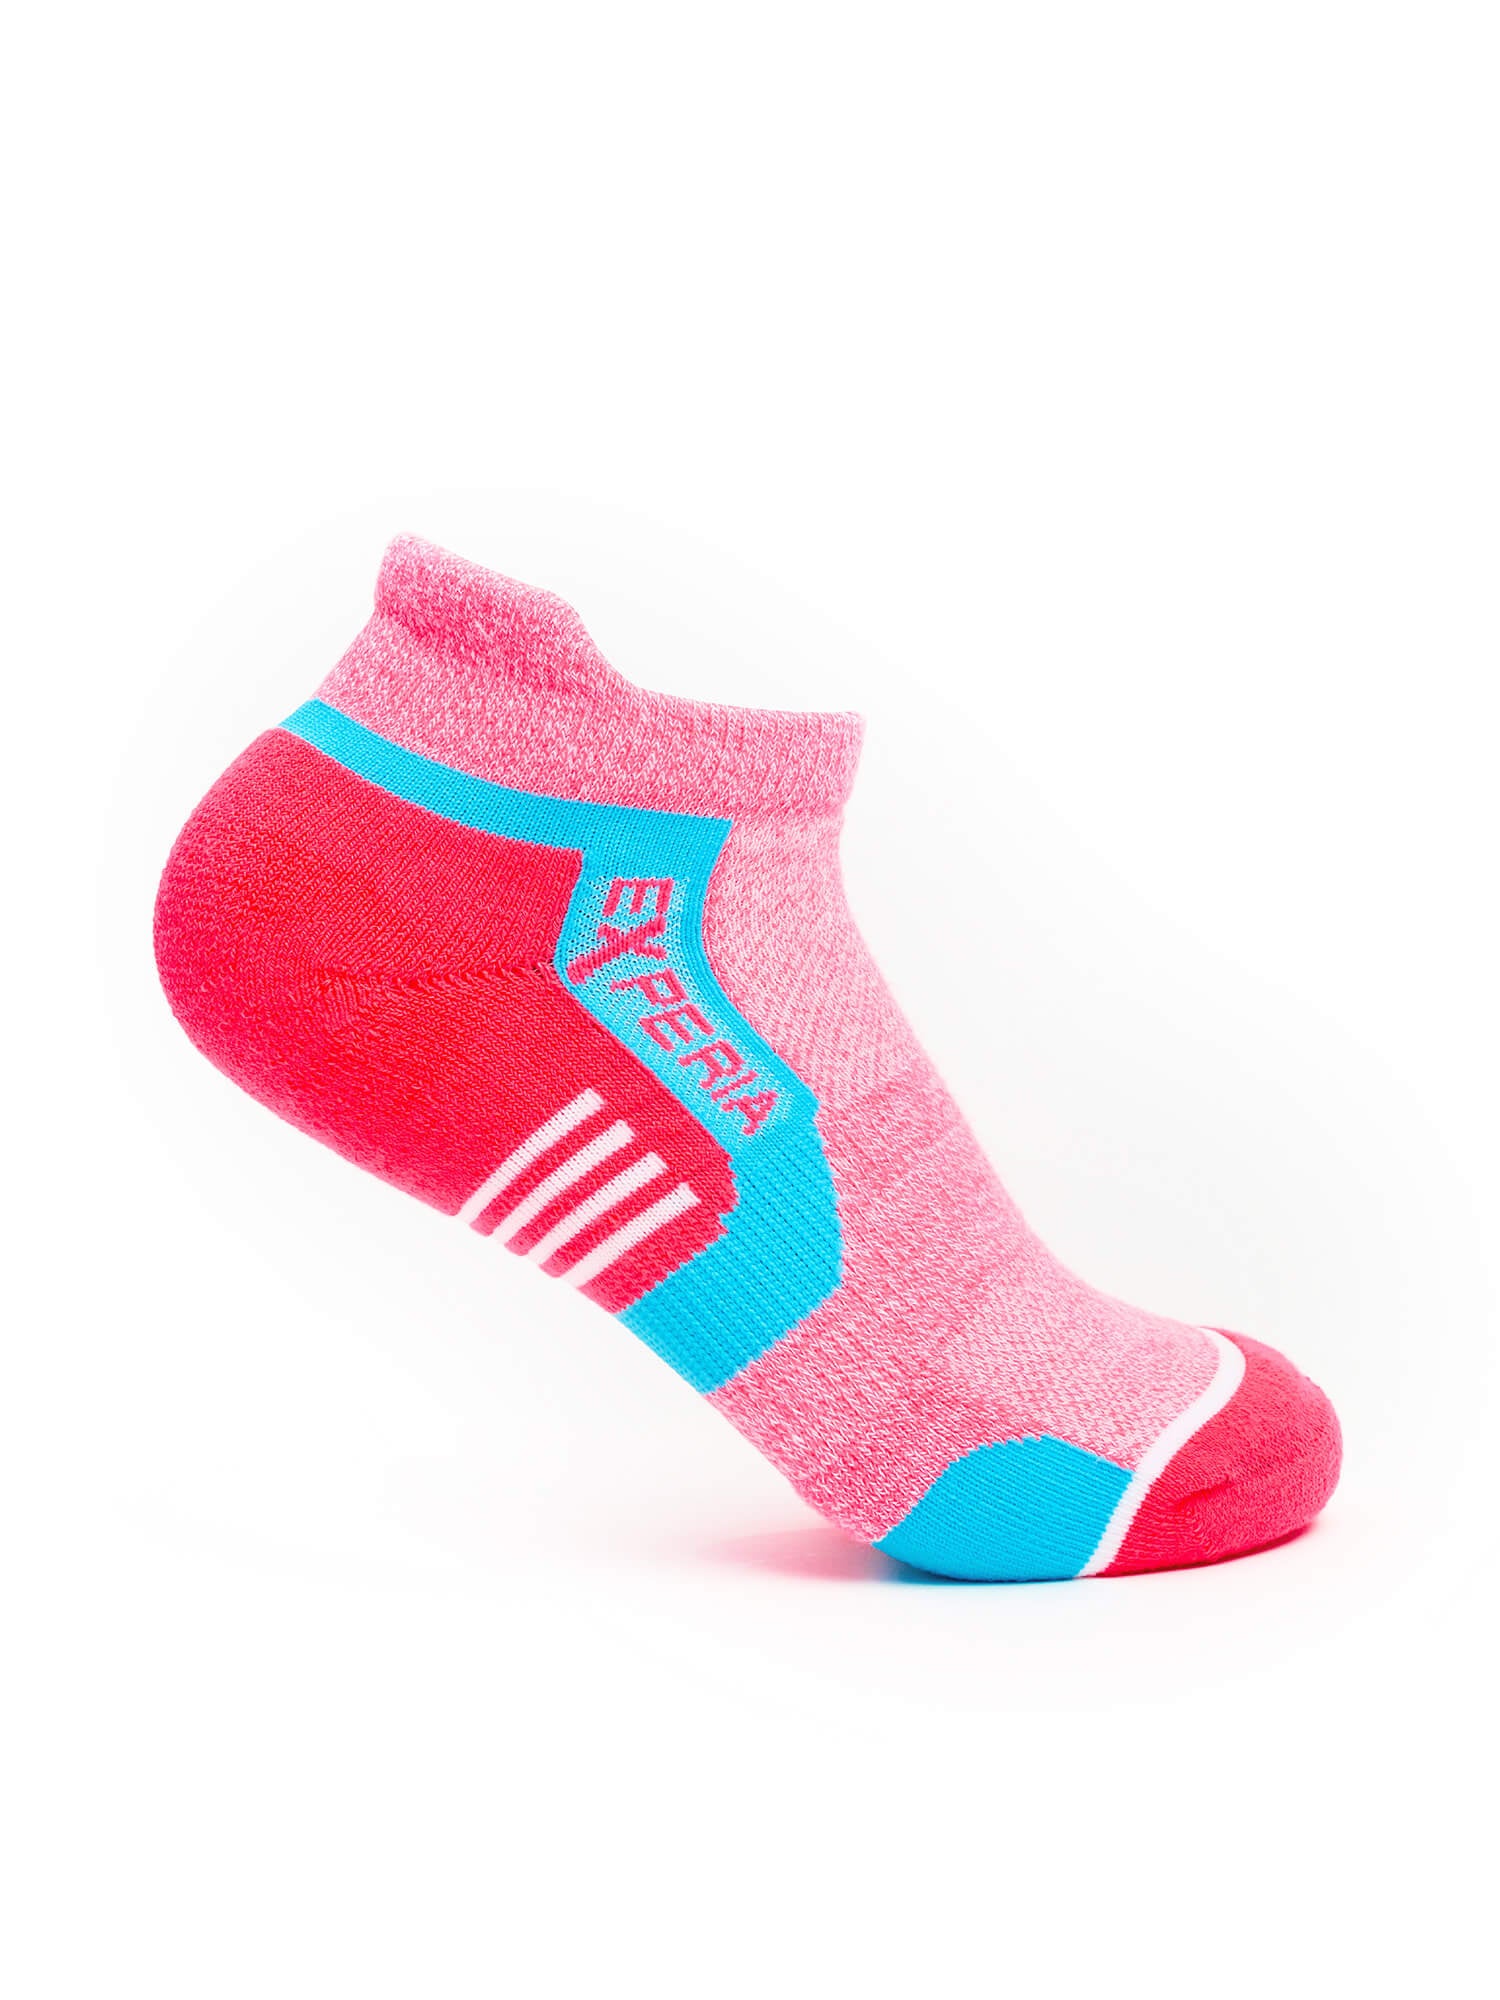 Thorlos Experia Repreve Low Cut Socks in Pink